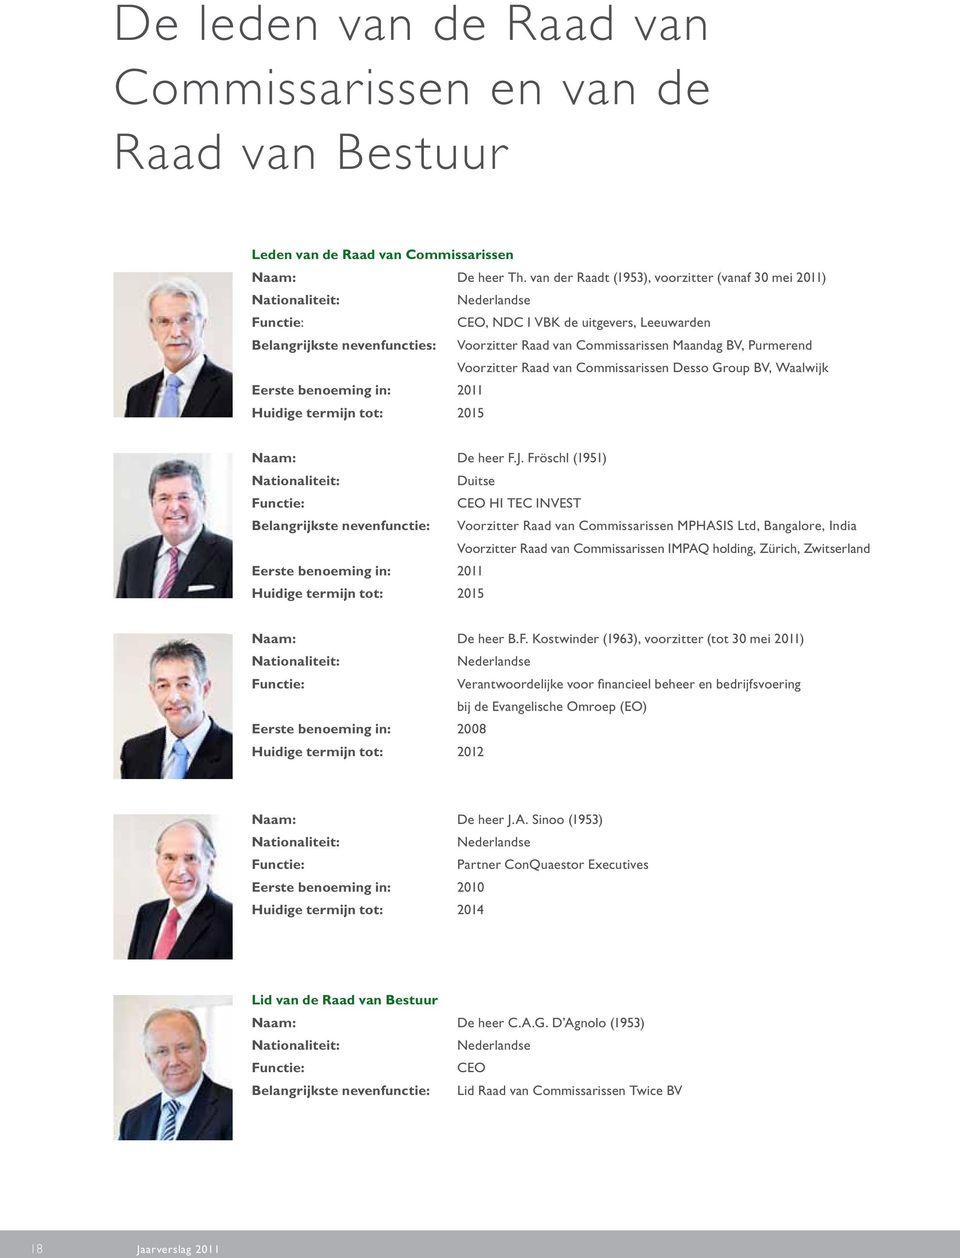 Maandag BV, Purmerend Voorzitter Raad van Commissarissen Desso Group BV, Waalwijk Eerste benoeming in: 2011 Huidige termijn tot: 2015 Naam: De heer F.J.